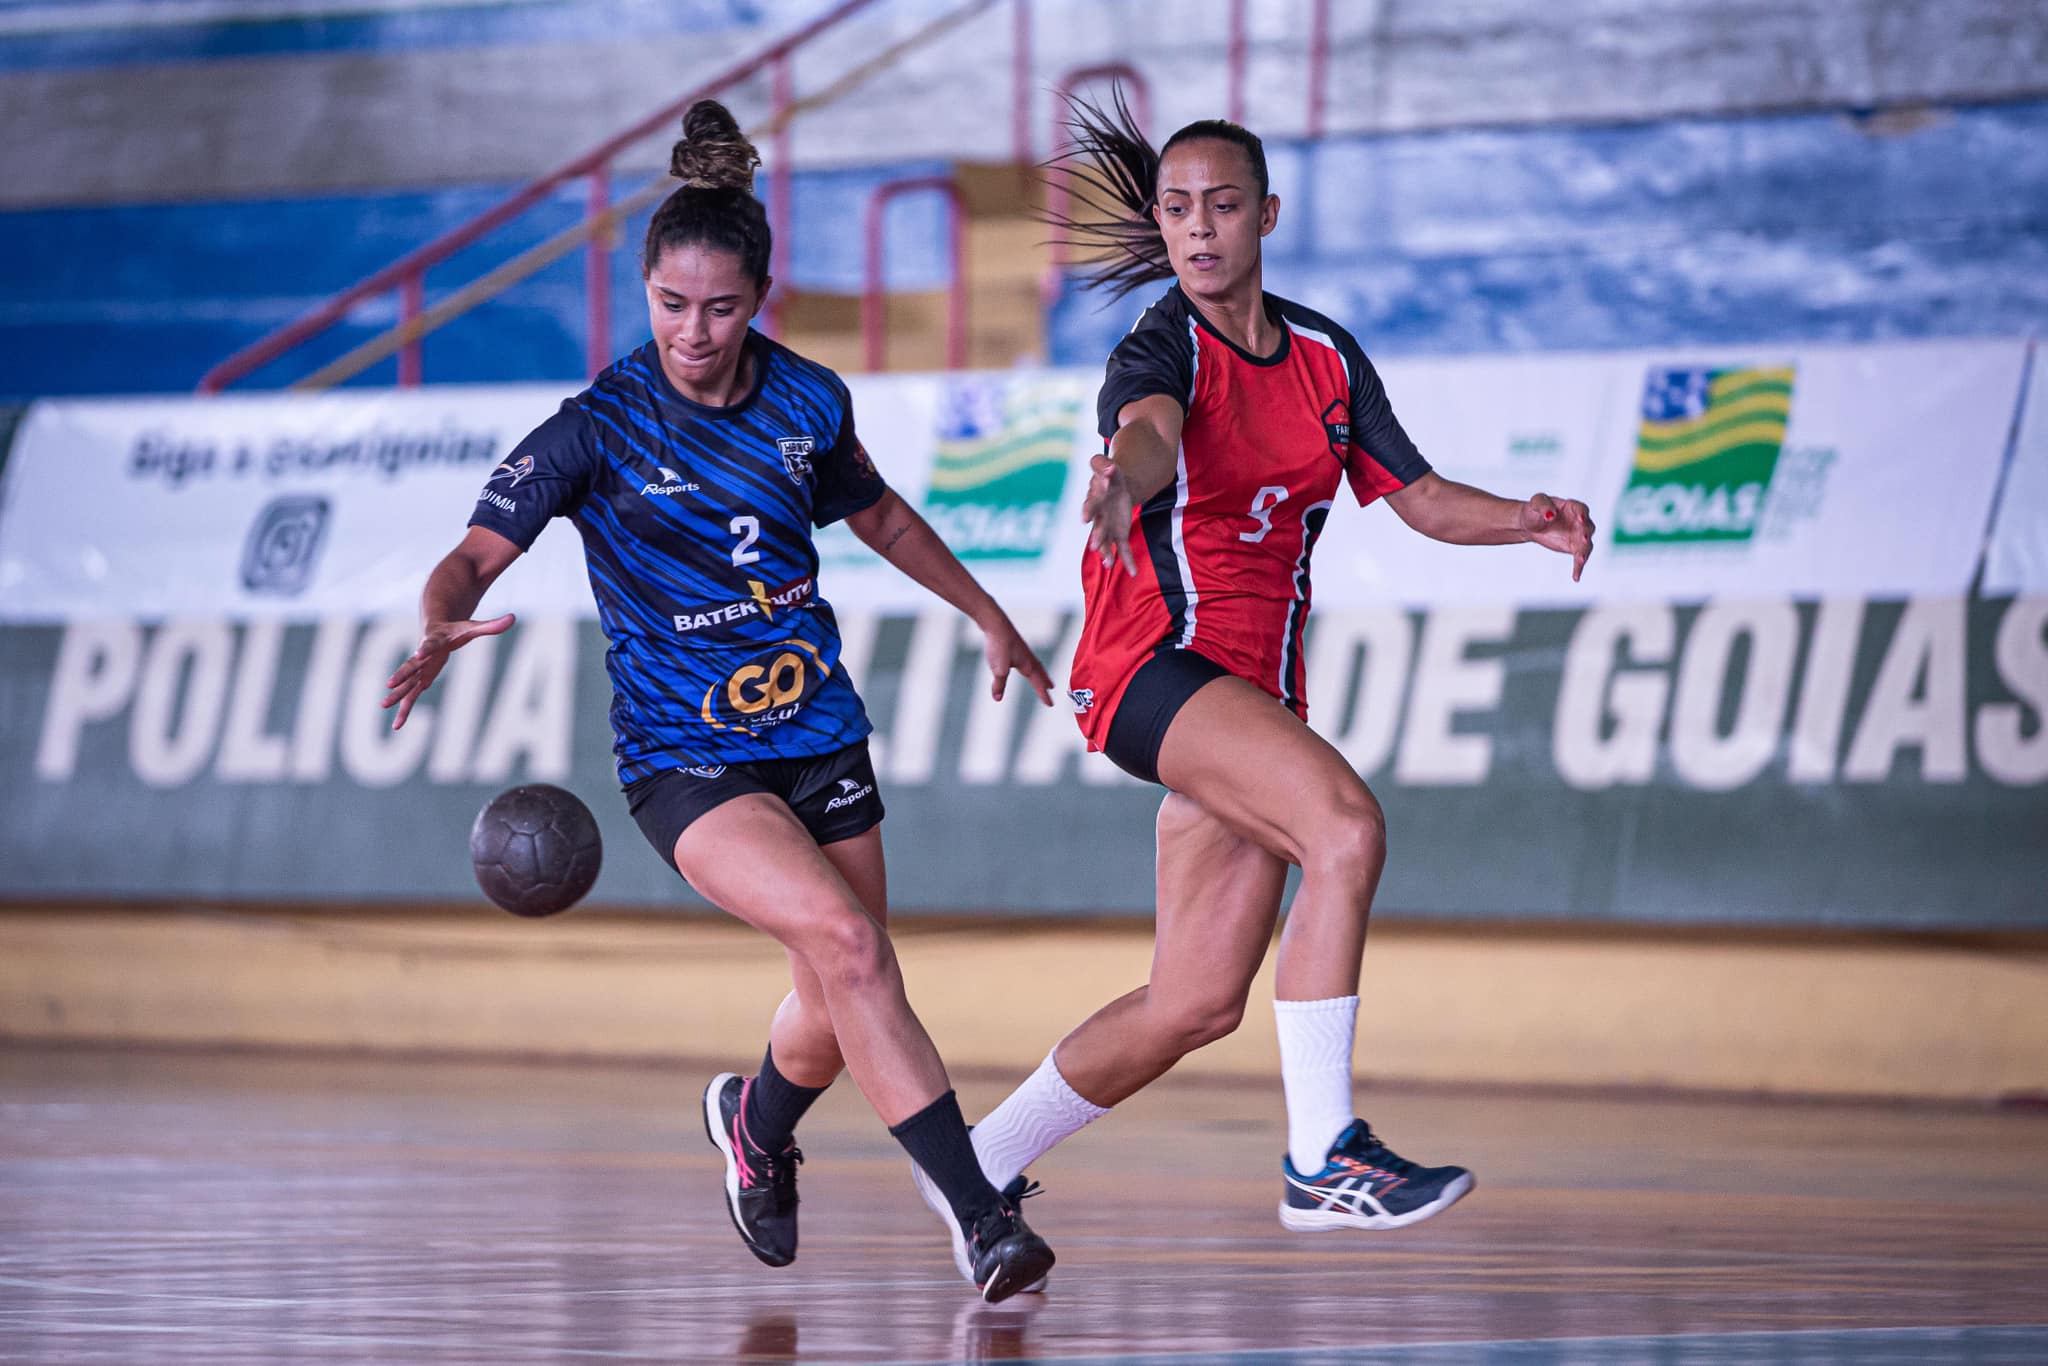 Edição 2022 dos Jogos Abertos de Goiás começa com disputas em quatro modalidades